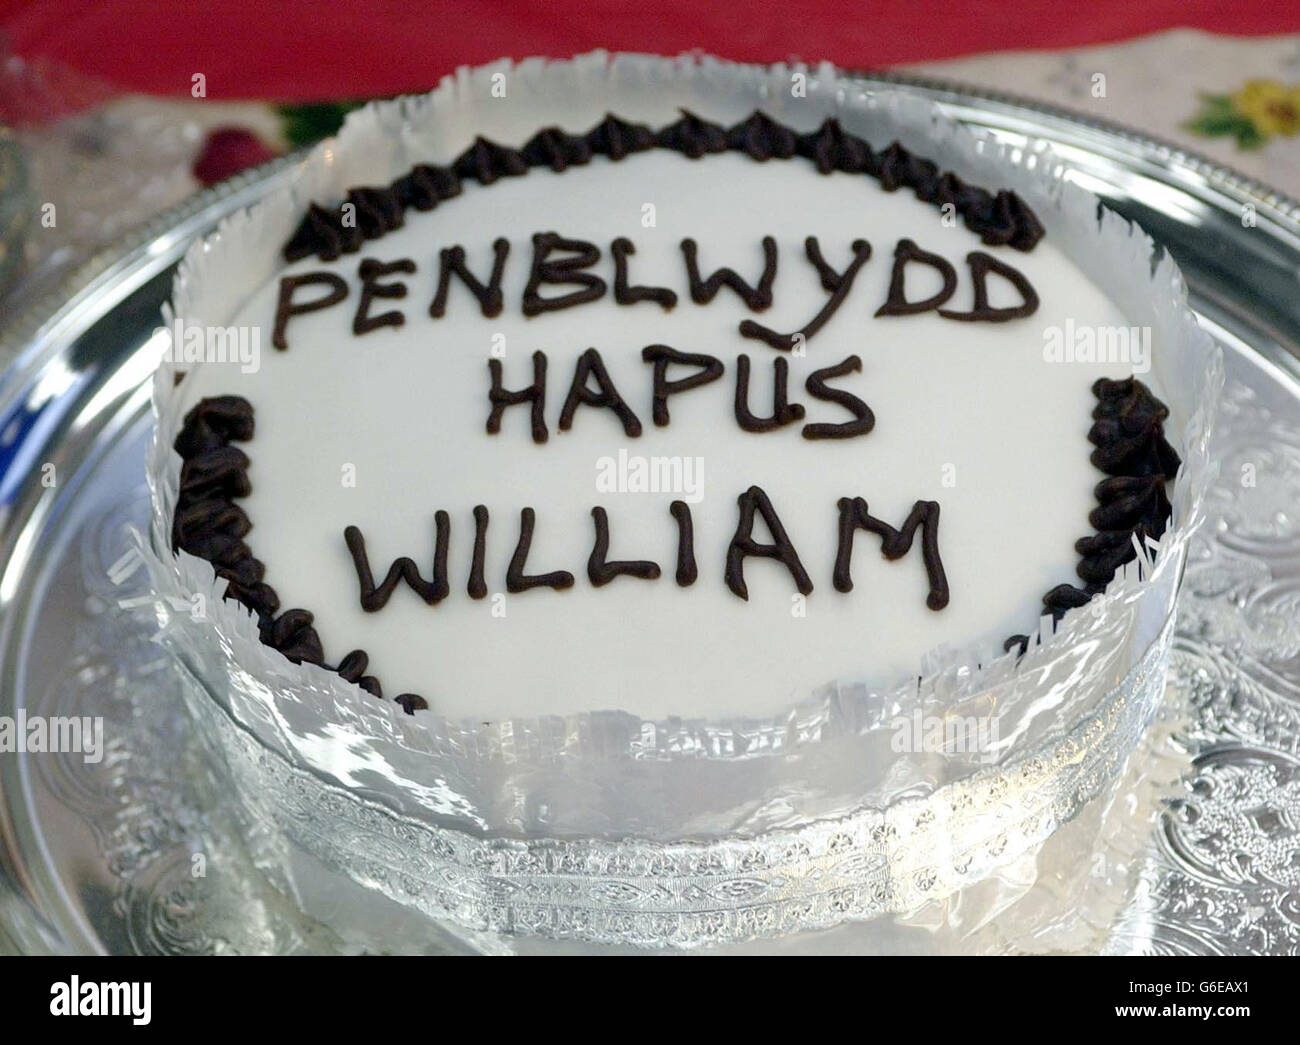 Eine walisische Geburtstagstorte, die speziell für Prinz William gemacht wurde und ihm bei einem Besuch der Anglesey Food Fair in Nordwales geschenkt wurde, sind der Prinz, 21, am kommenden Samstag, und sein Vater, Prinz Charles, für diesen Tag in Wales. * ... und besuchen später Newport Action for Single Obdachlos in Südwales. Stockfoto